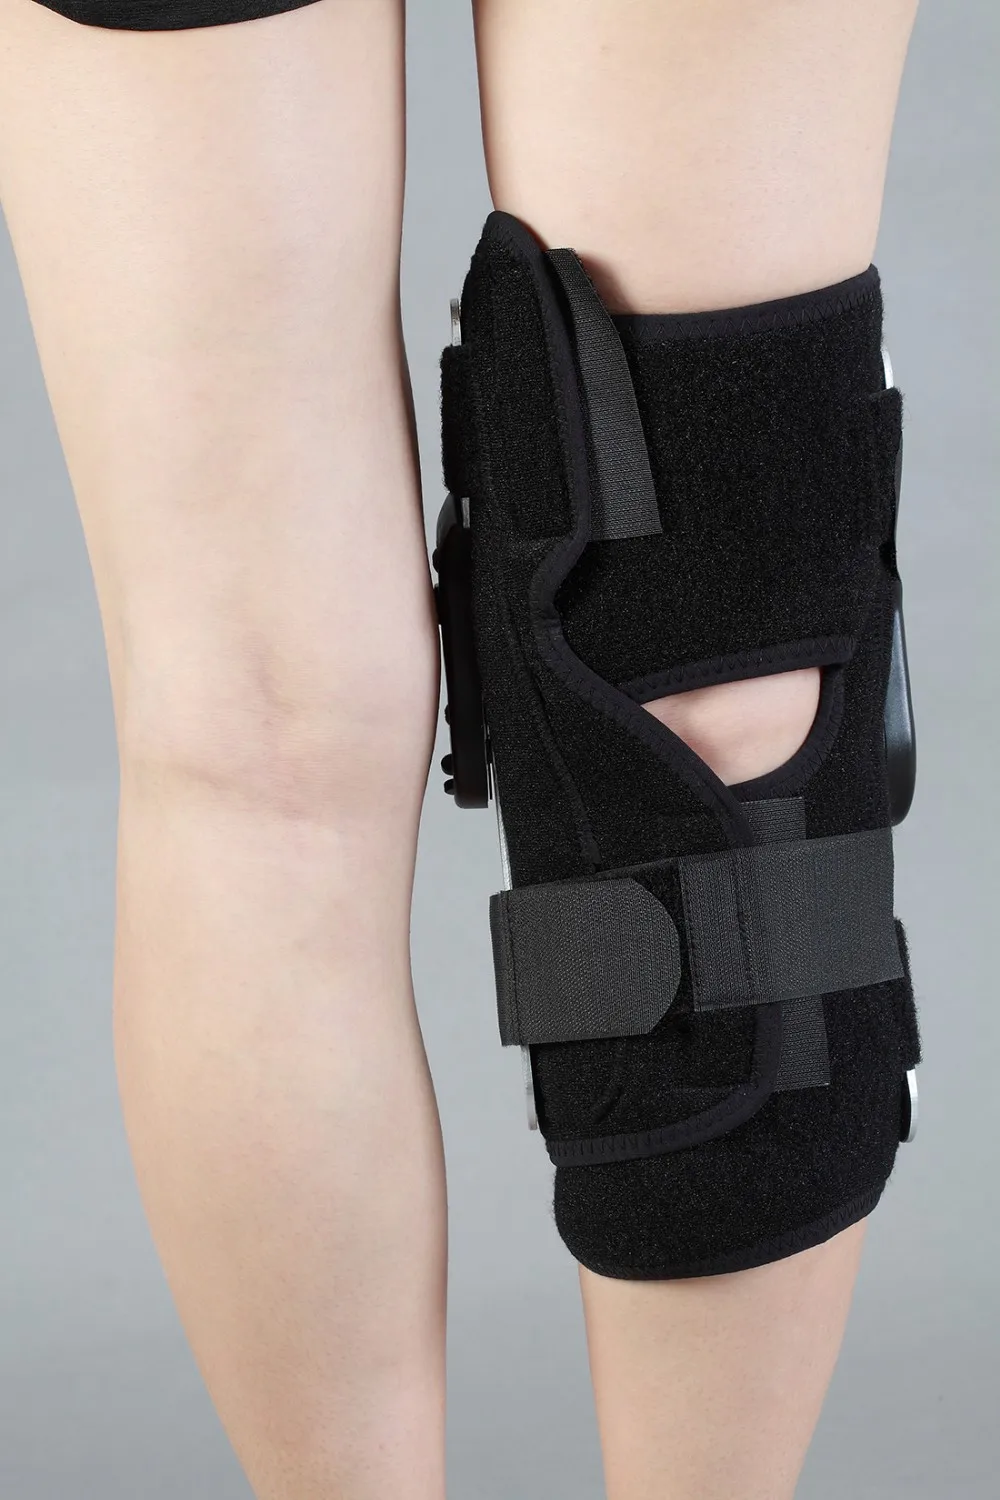 HKJD ПЗУ коленный подтяжки Поддержка колодки Ортез пояс навесной регулируемый короткий коленный сустав боковая стабильность боли релиз